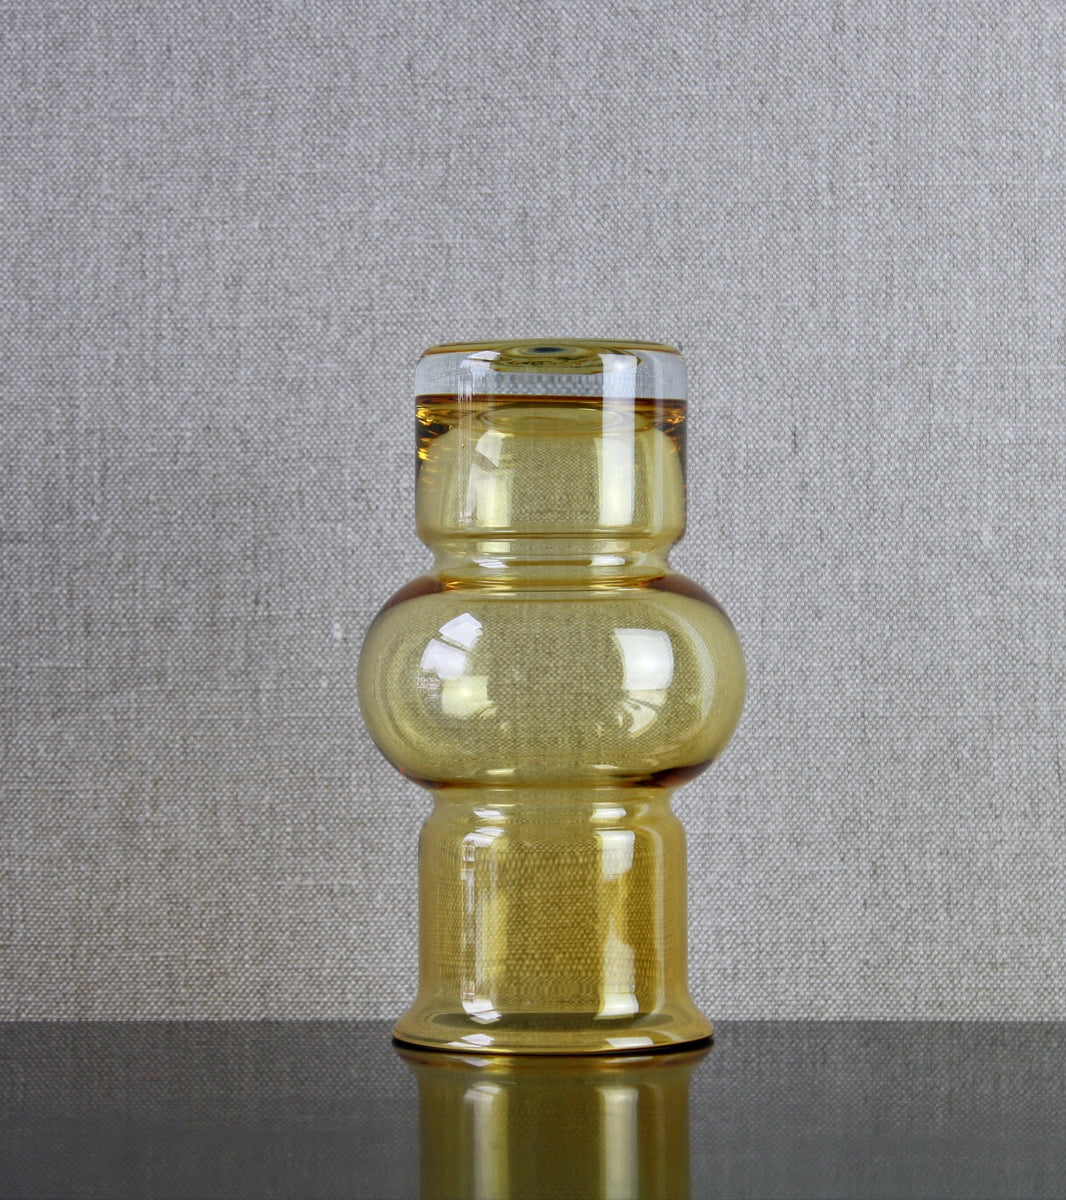 Riihimäki Model 1520 "Tuulikki" (Little Wind) Vase in Yellow